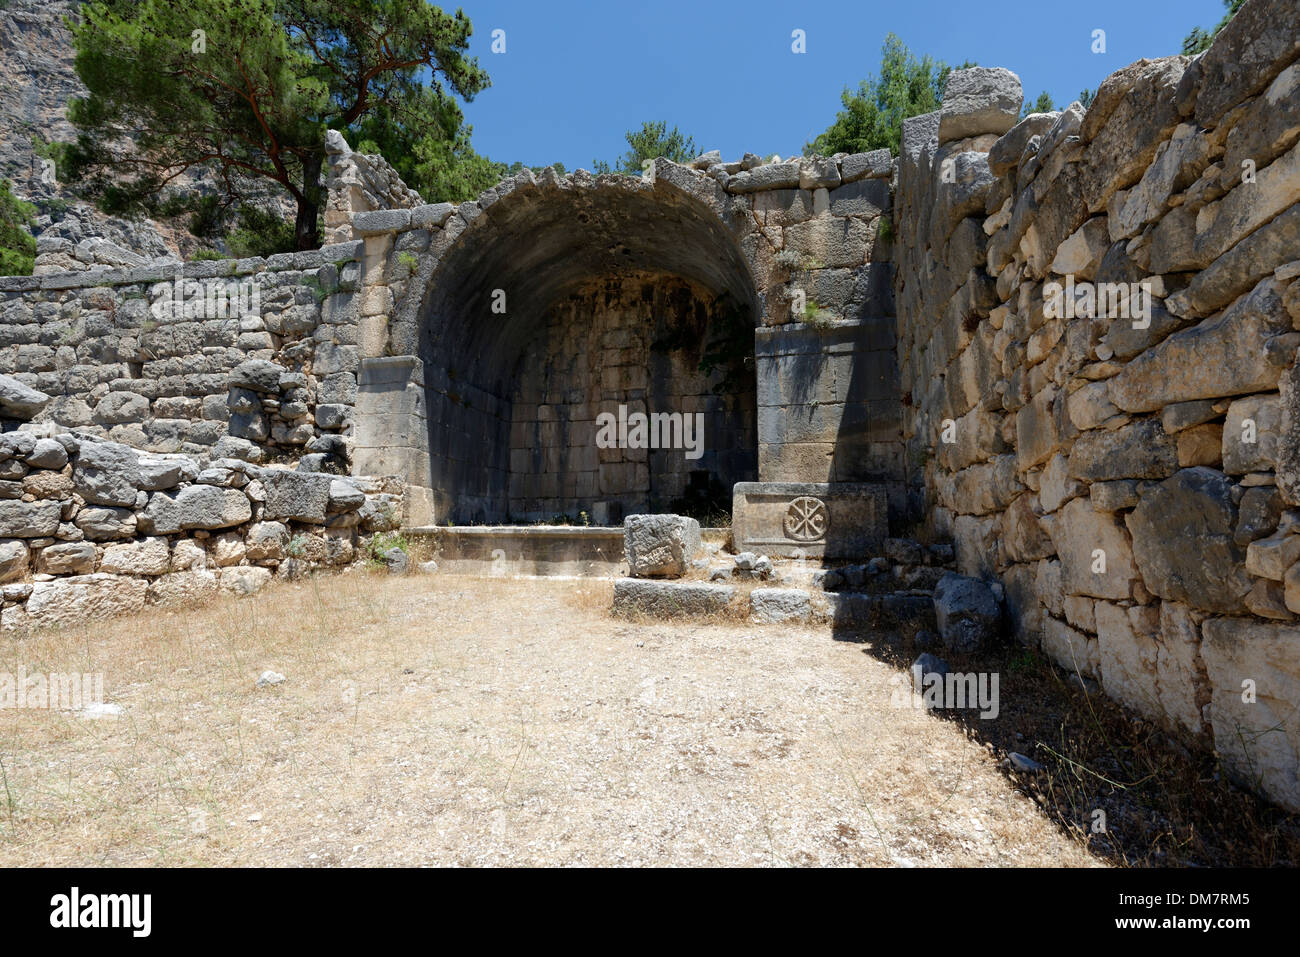 Con soffitti a volta le rovine della tomba alla necropoli orientale all'antica città Lycian di Arykanda, provincia di Antalya, Turchia meridionale. Foto Stock